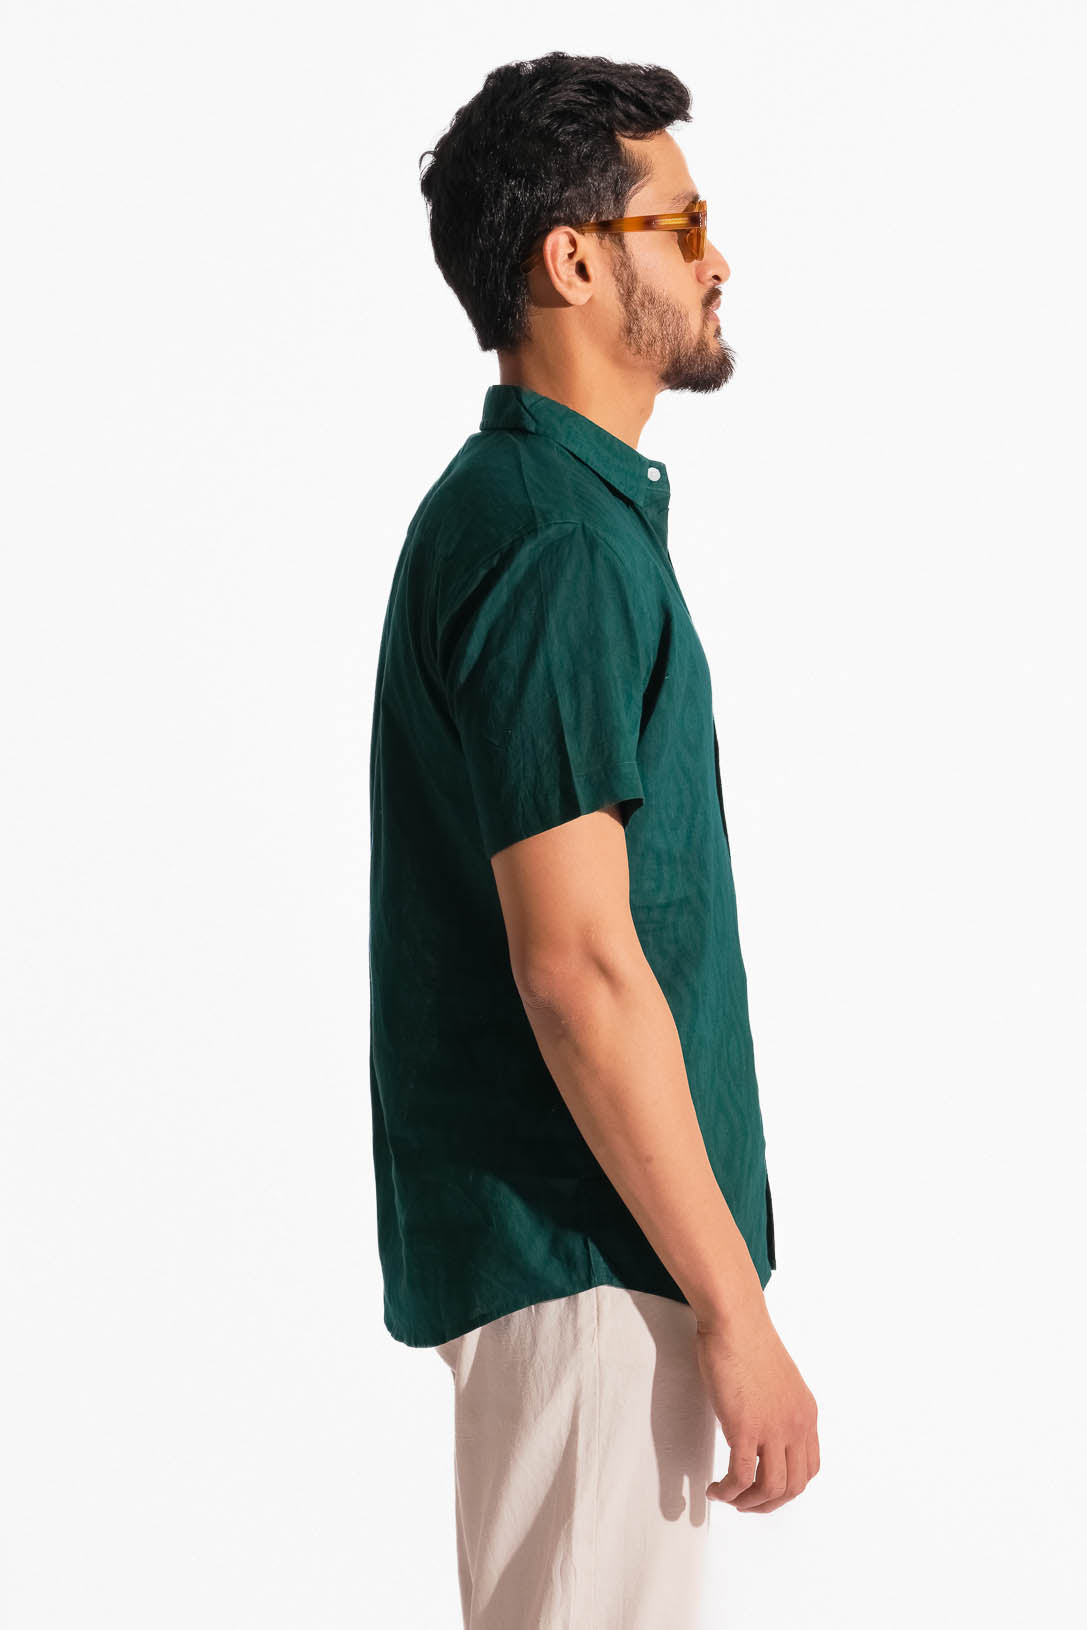 Absolute Green Shirt